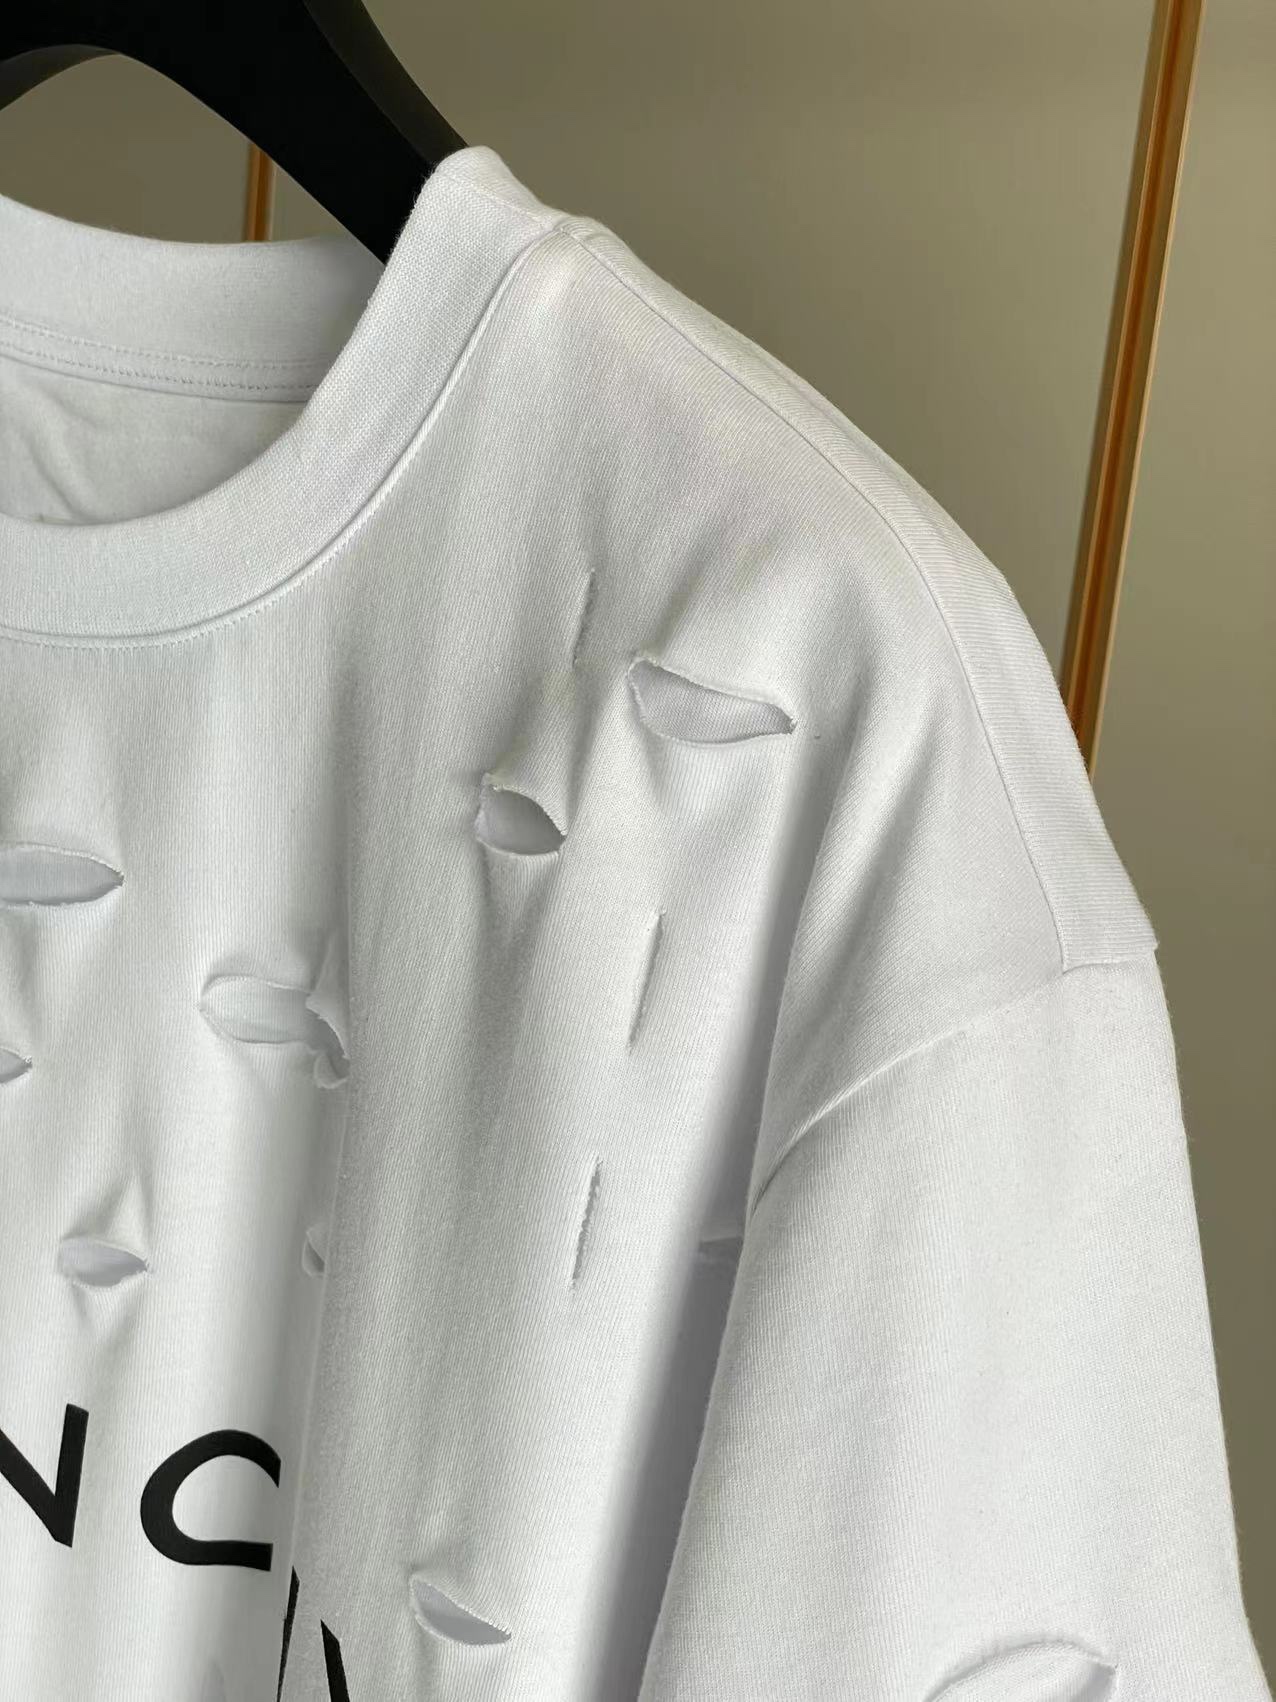 ジバンシィトップスコピ激安通販 純綿 Tシャツ 半袖 シンプル ダメージ加工のデザイン 5色可選 ホワイト_4